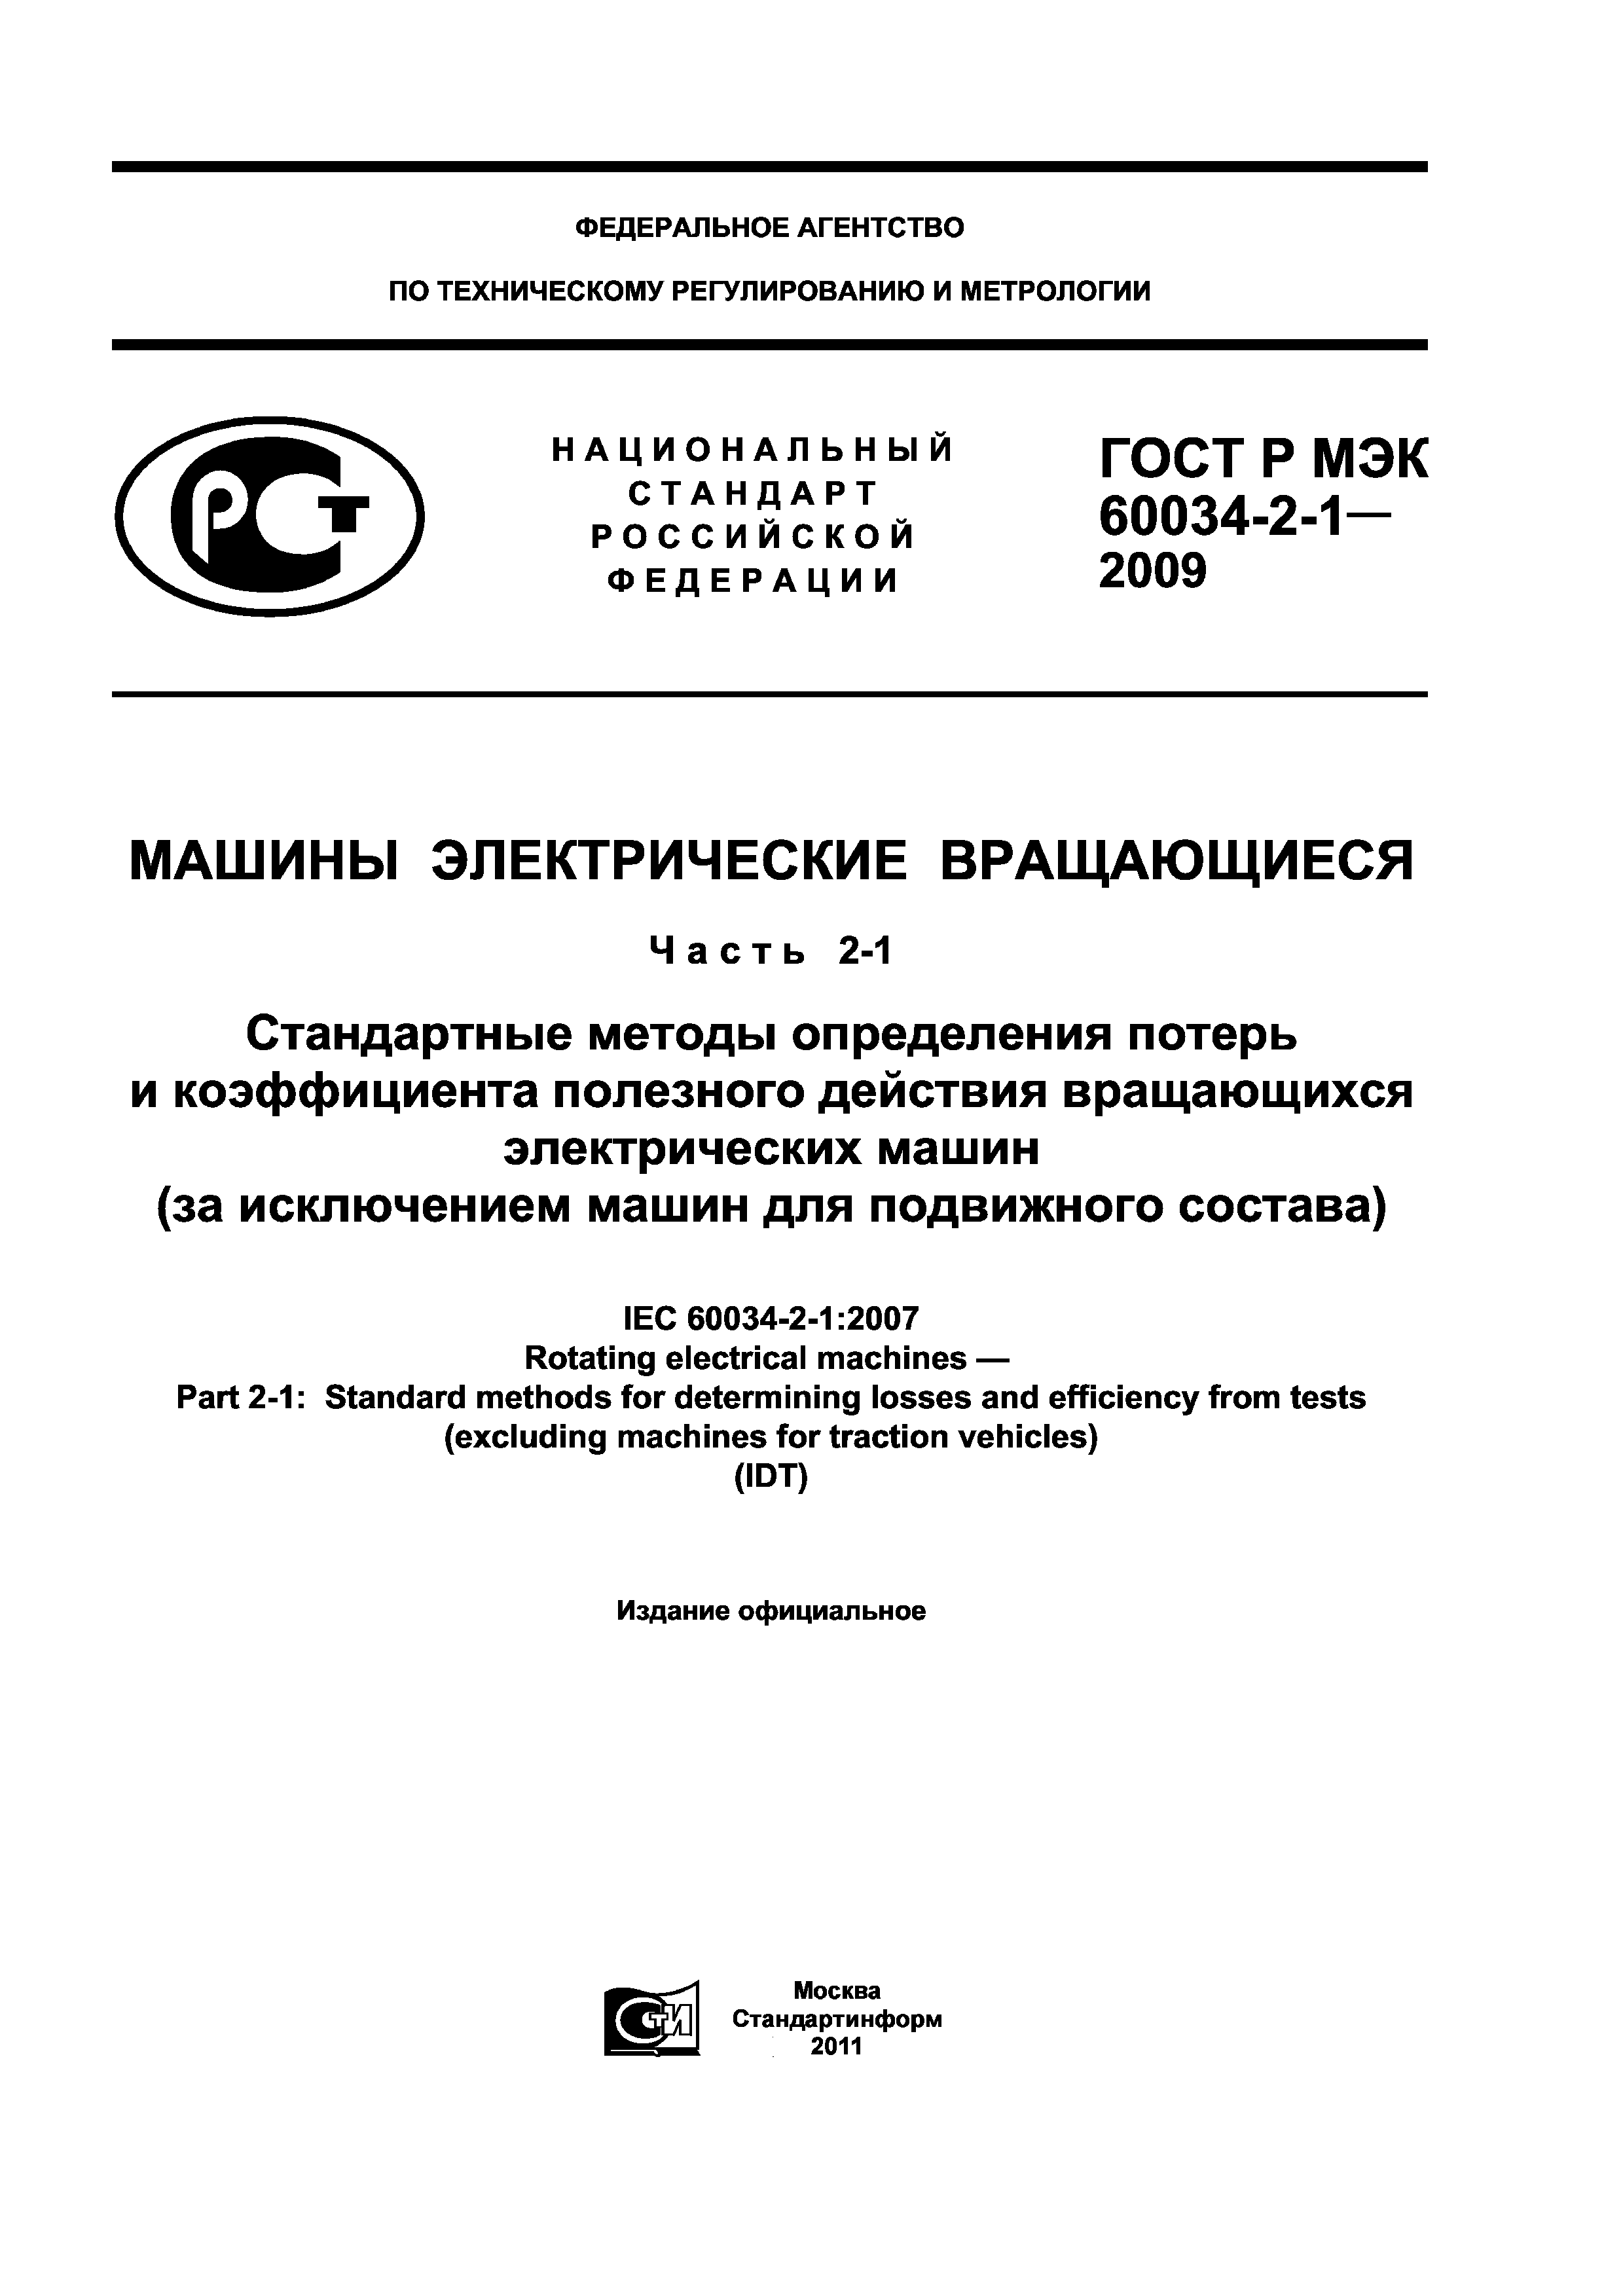 ГОСТ Р МЭК 60034-2-1-2009